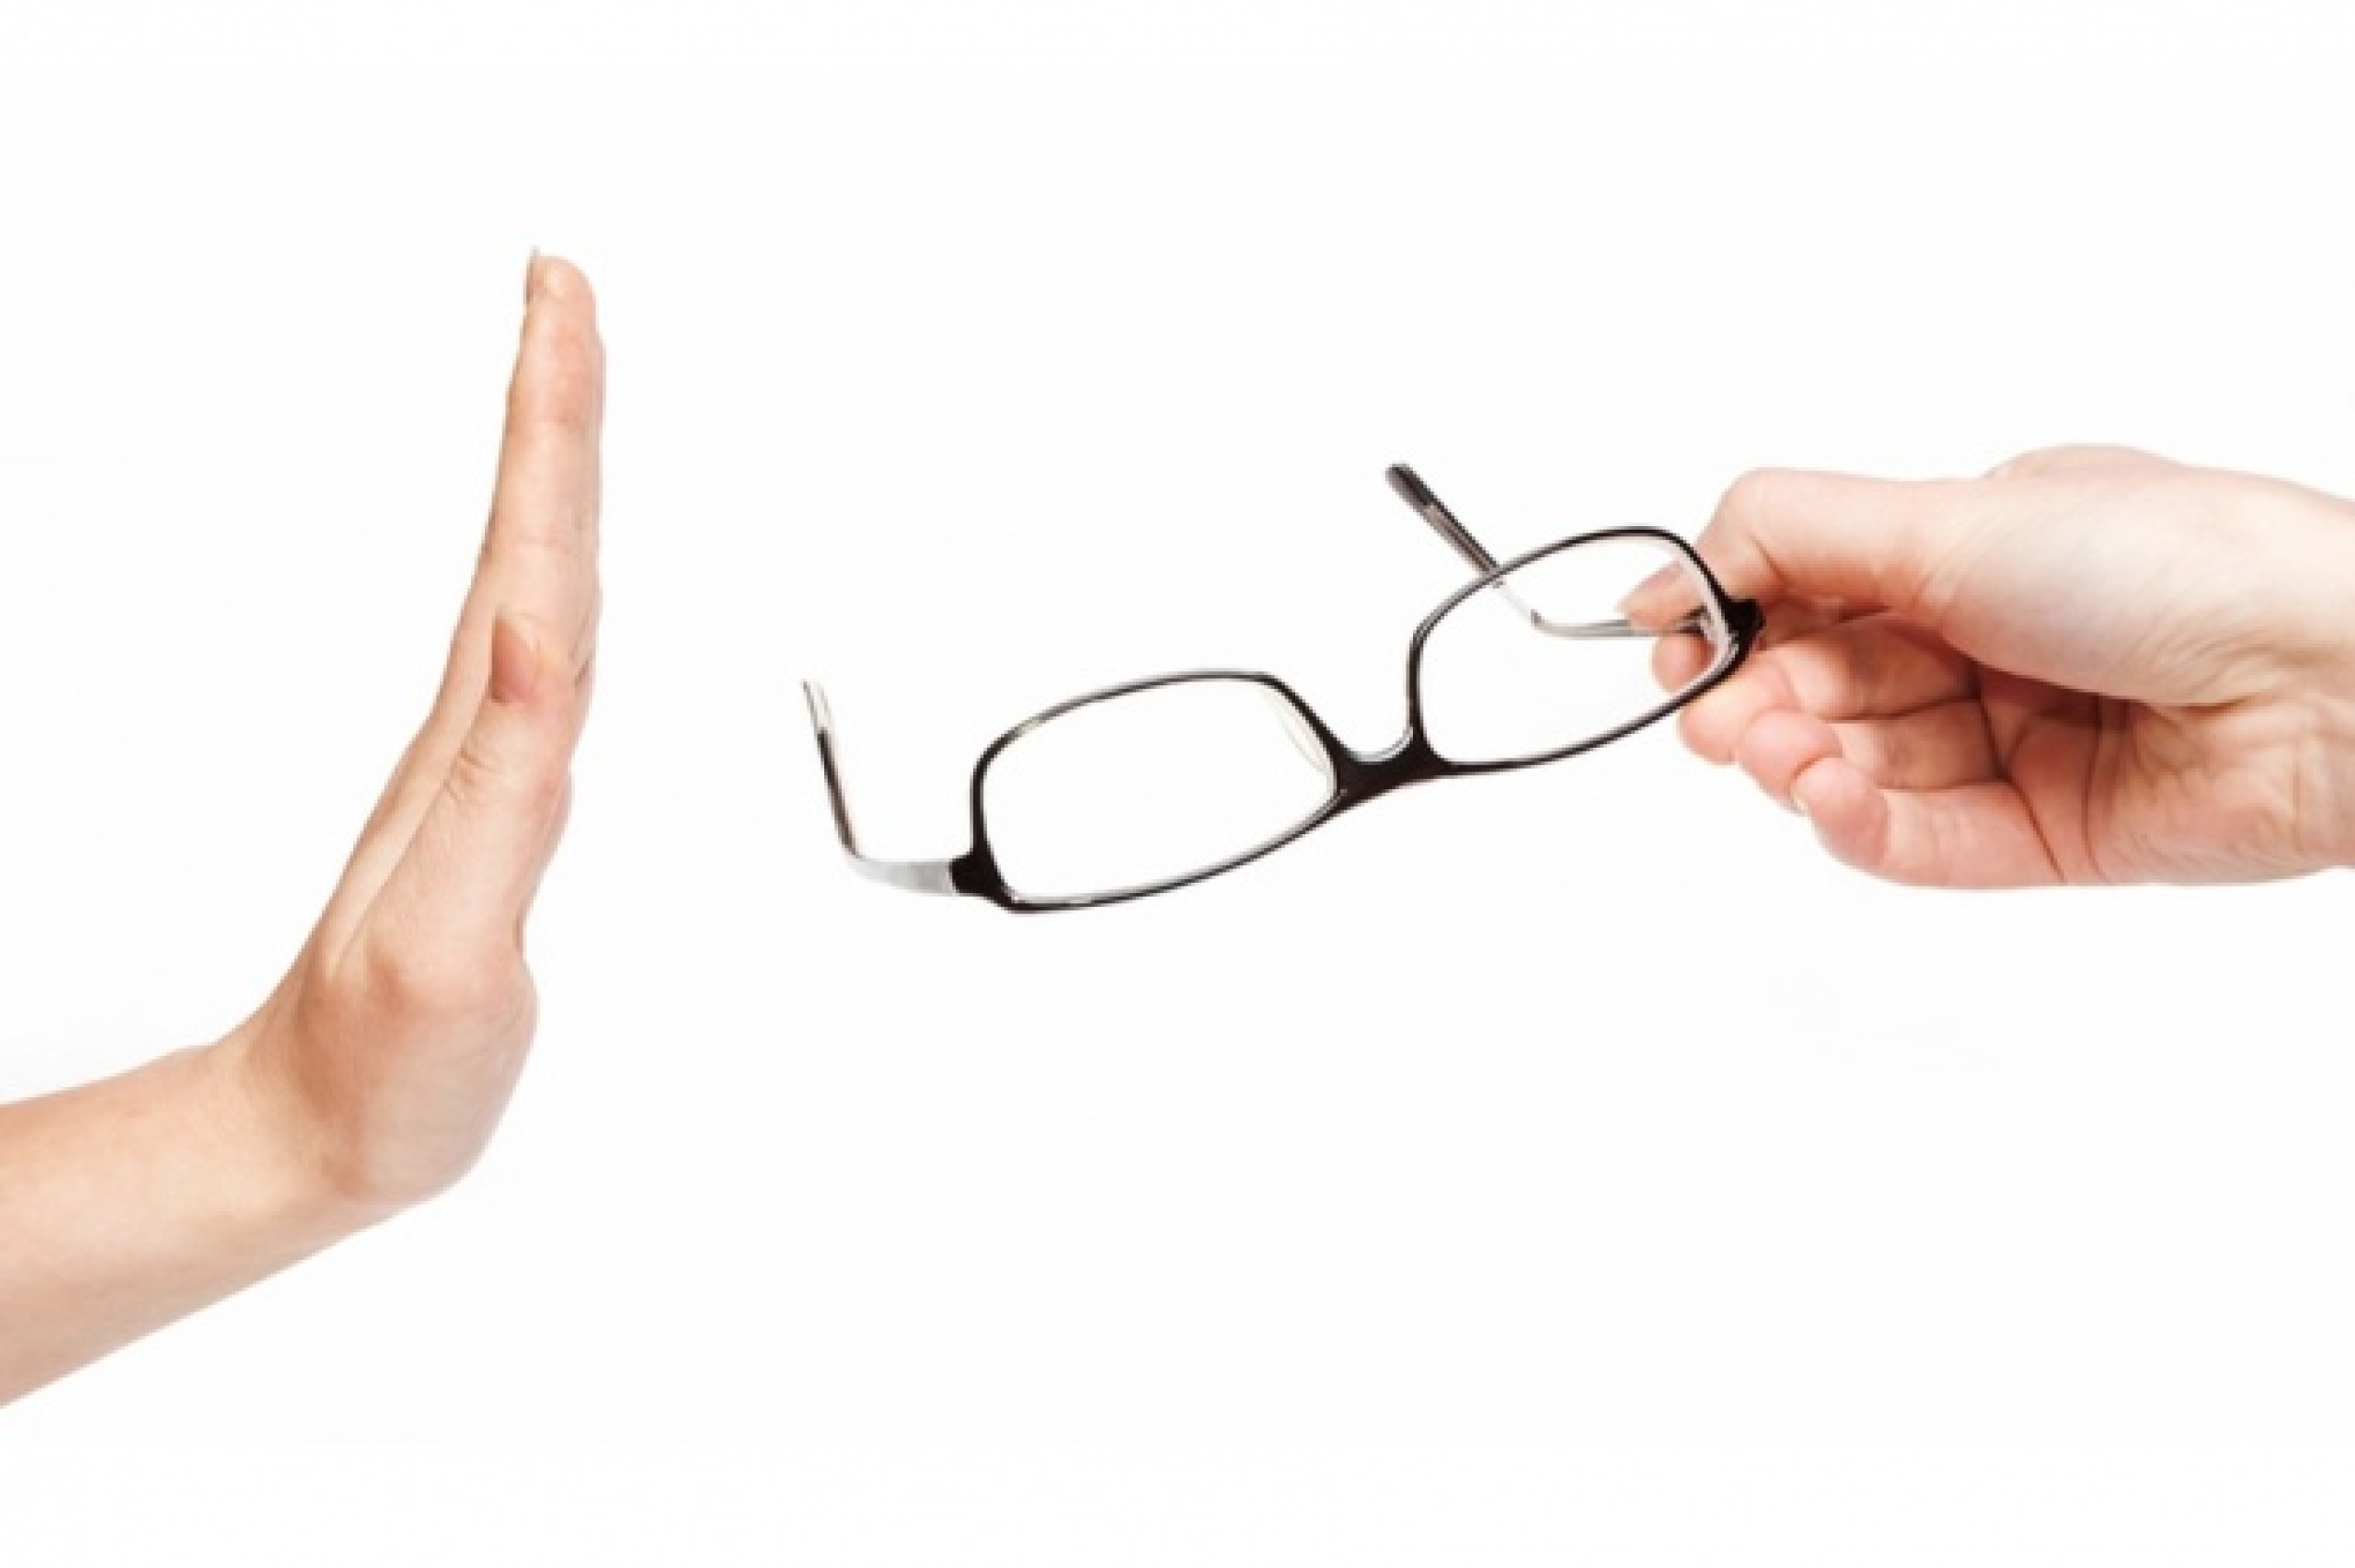 Как восстановить зрение